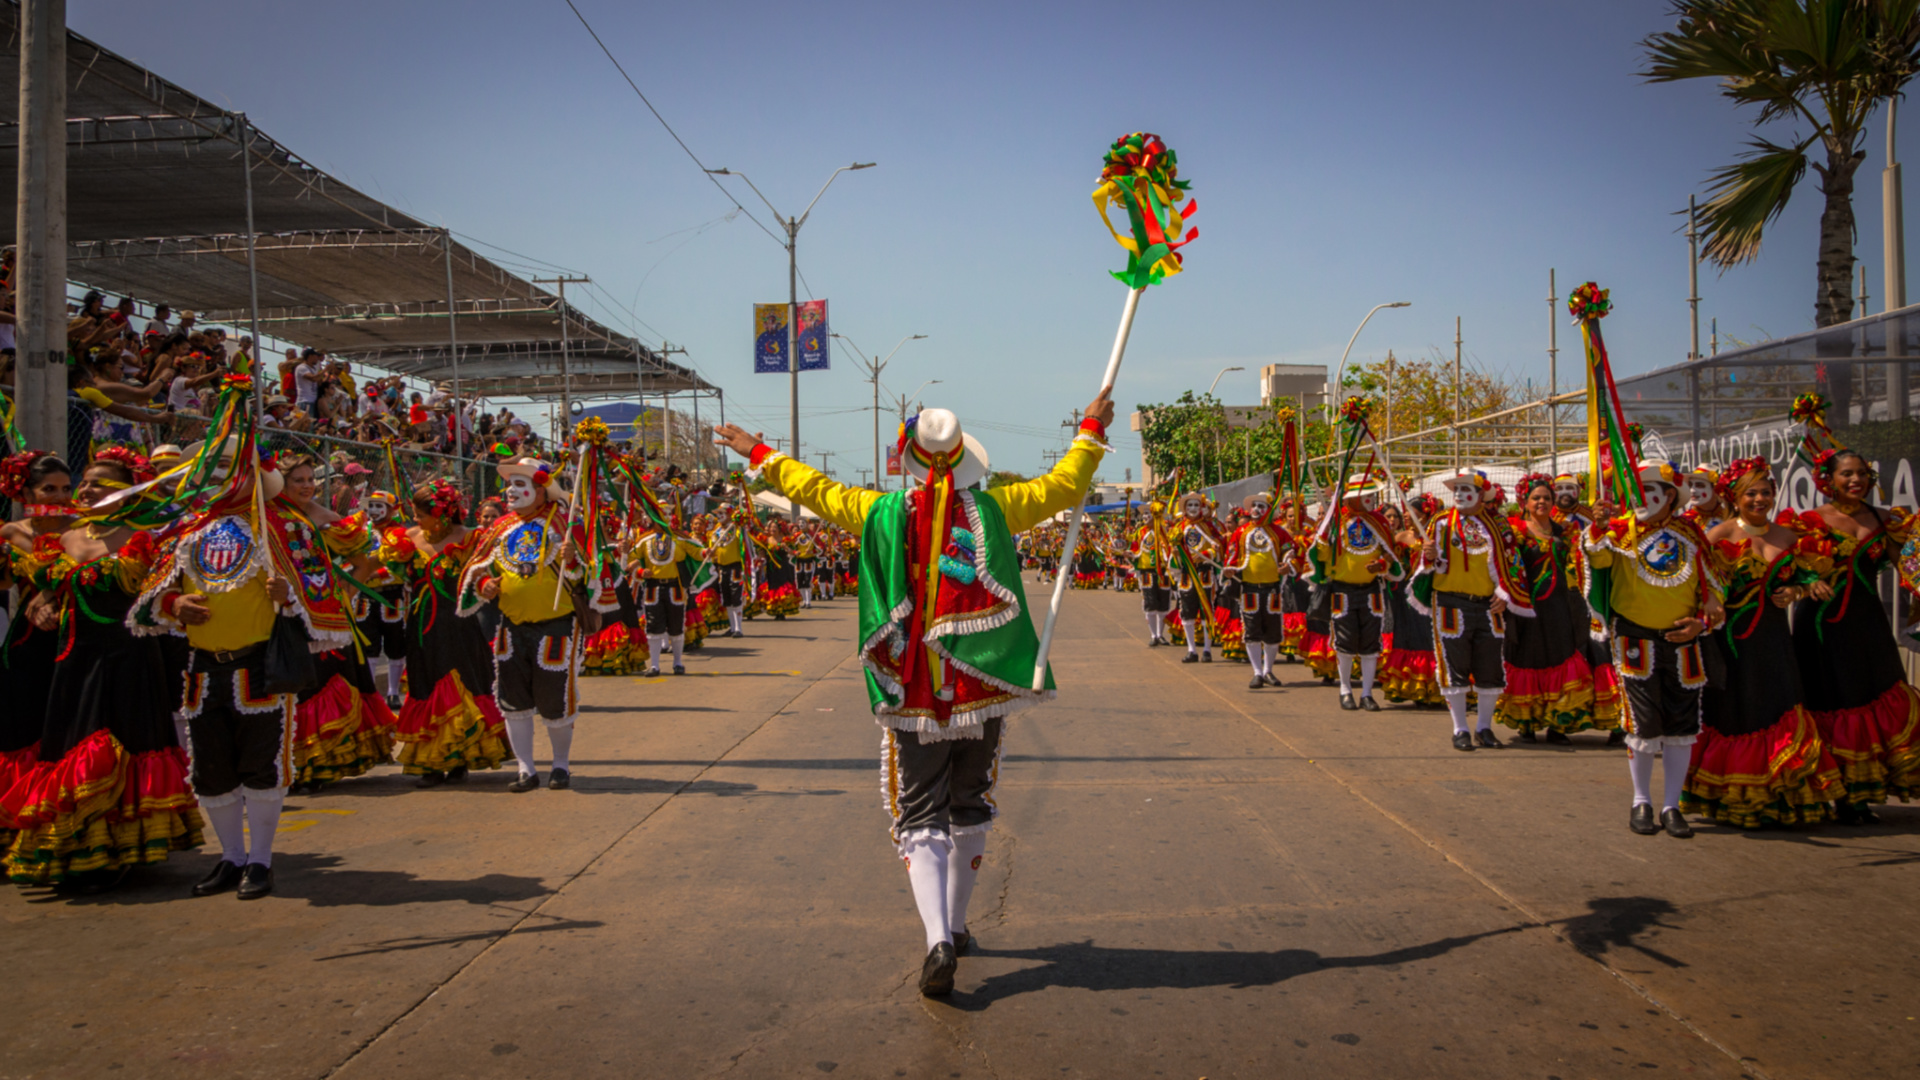 La mayor fiesta del Caribe Colombiano tendrá que celebrarse desde casa a causa del coronavirus. Vía: Carnaval de Barranquilla